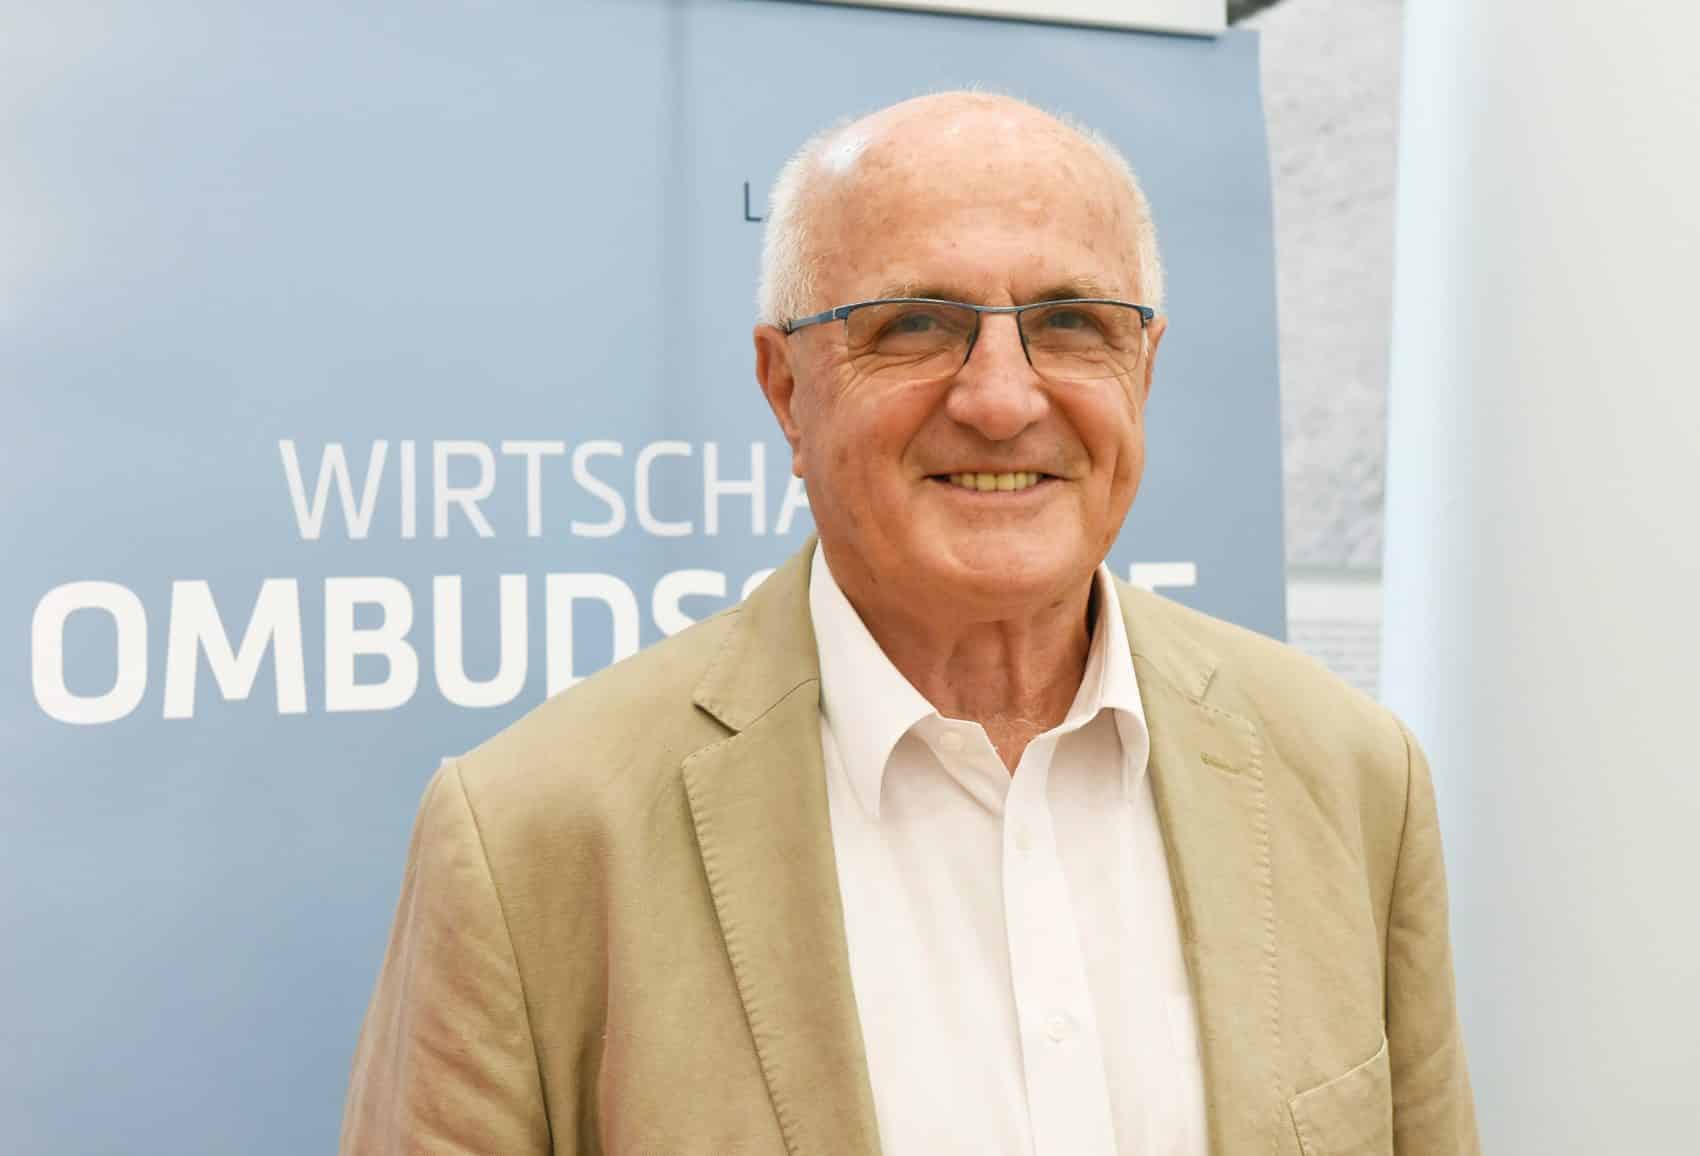 Der Kärntner Wirtschaftsombudsmann Franz Pacher kritisiert den späteren Impfstart in Kärnten stark.